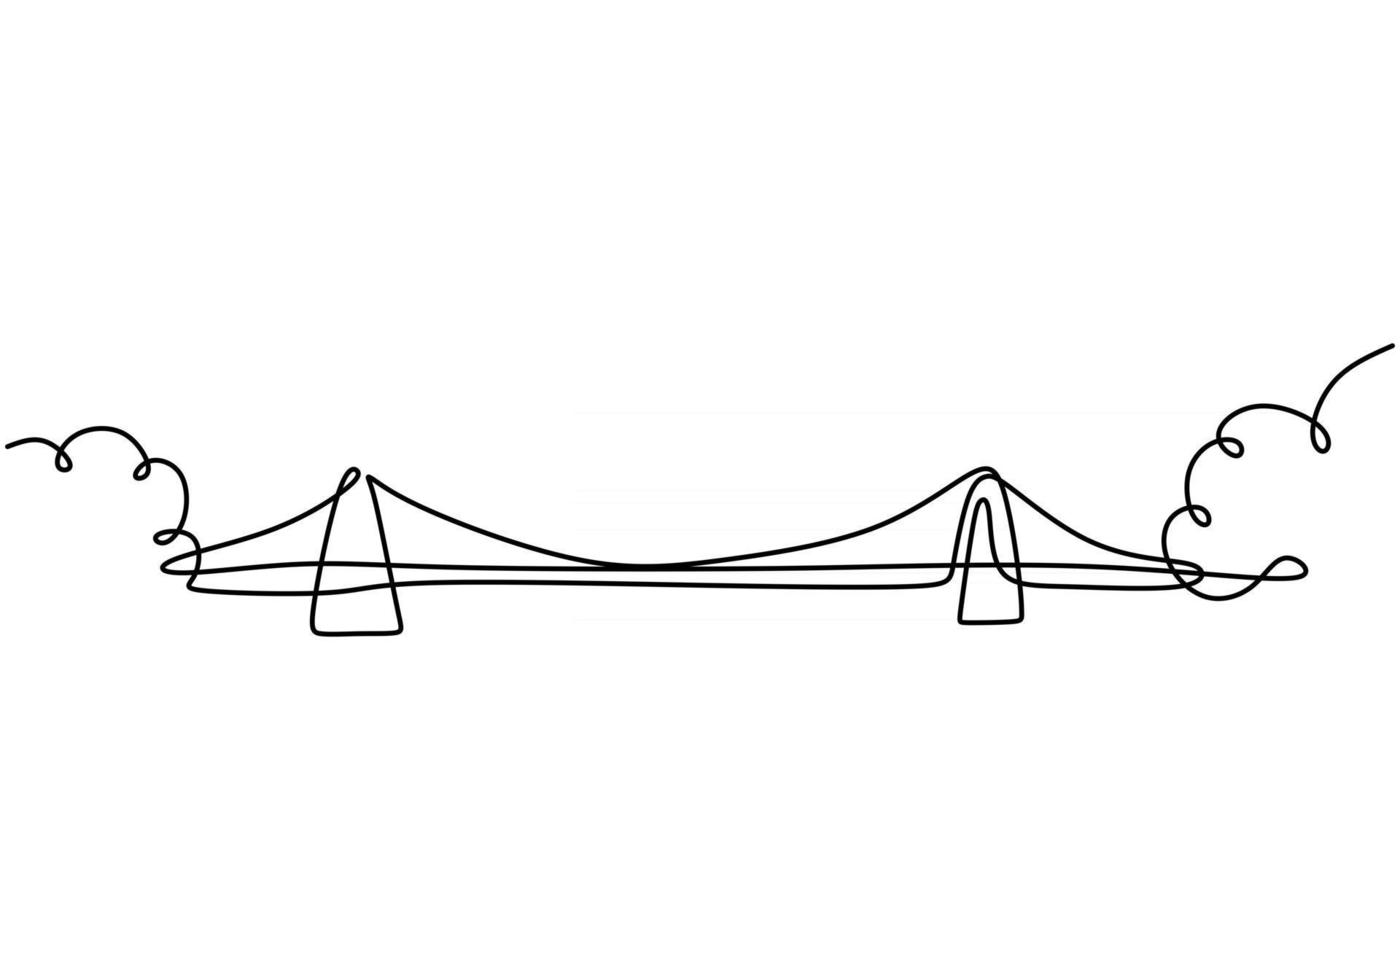 gigantesco ponte sul fiume. continua una linea di disegno del ponte. stile minimalista moderno semplice isolato su priorità bassa bianca. vettore